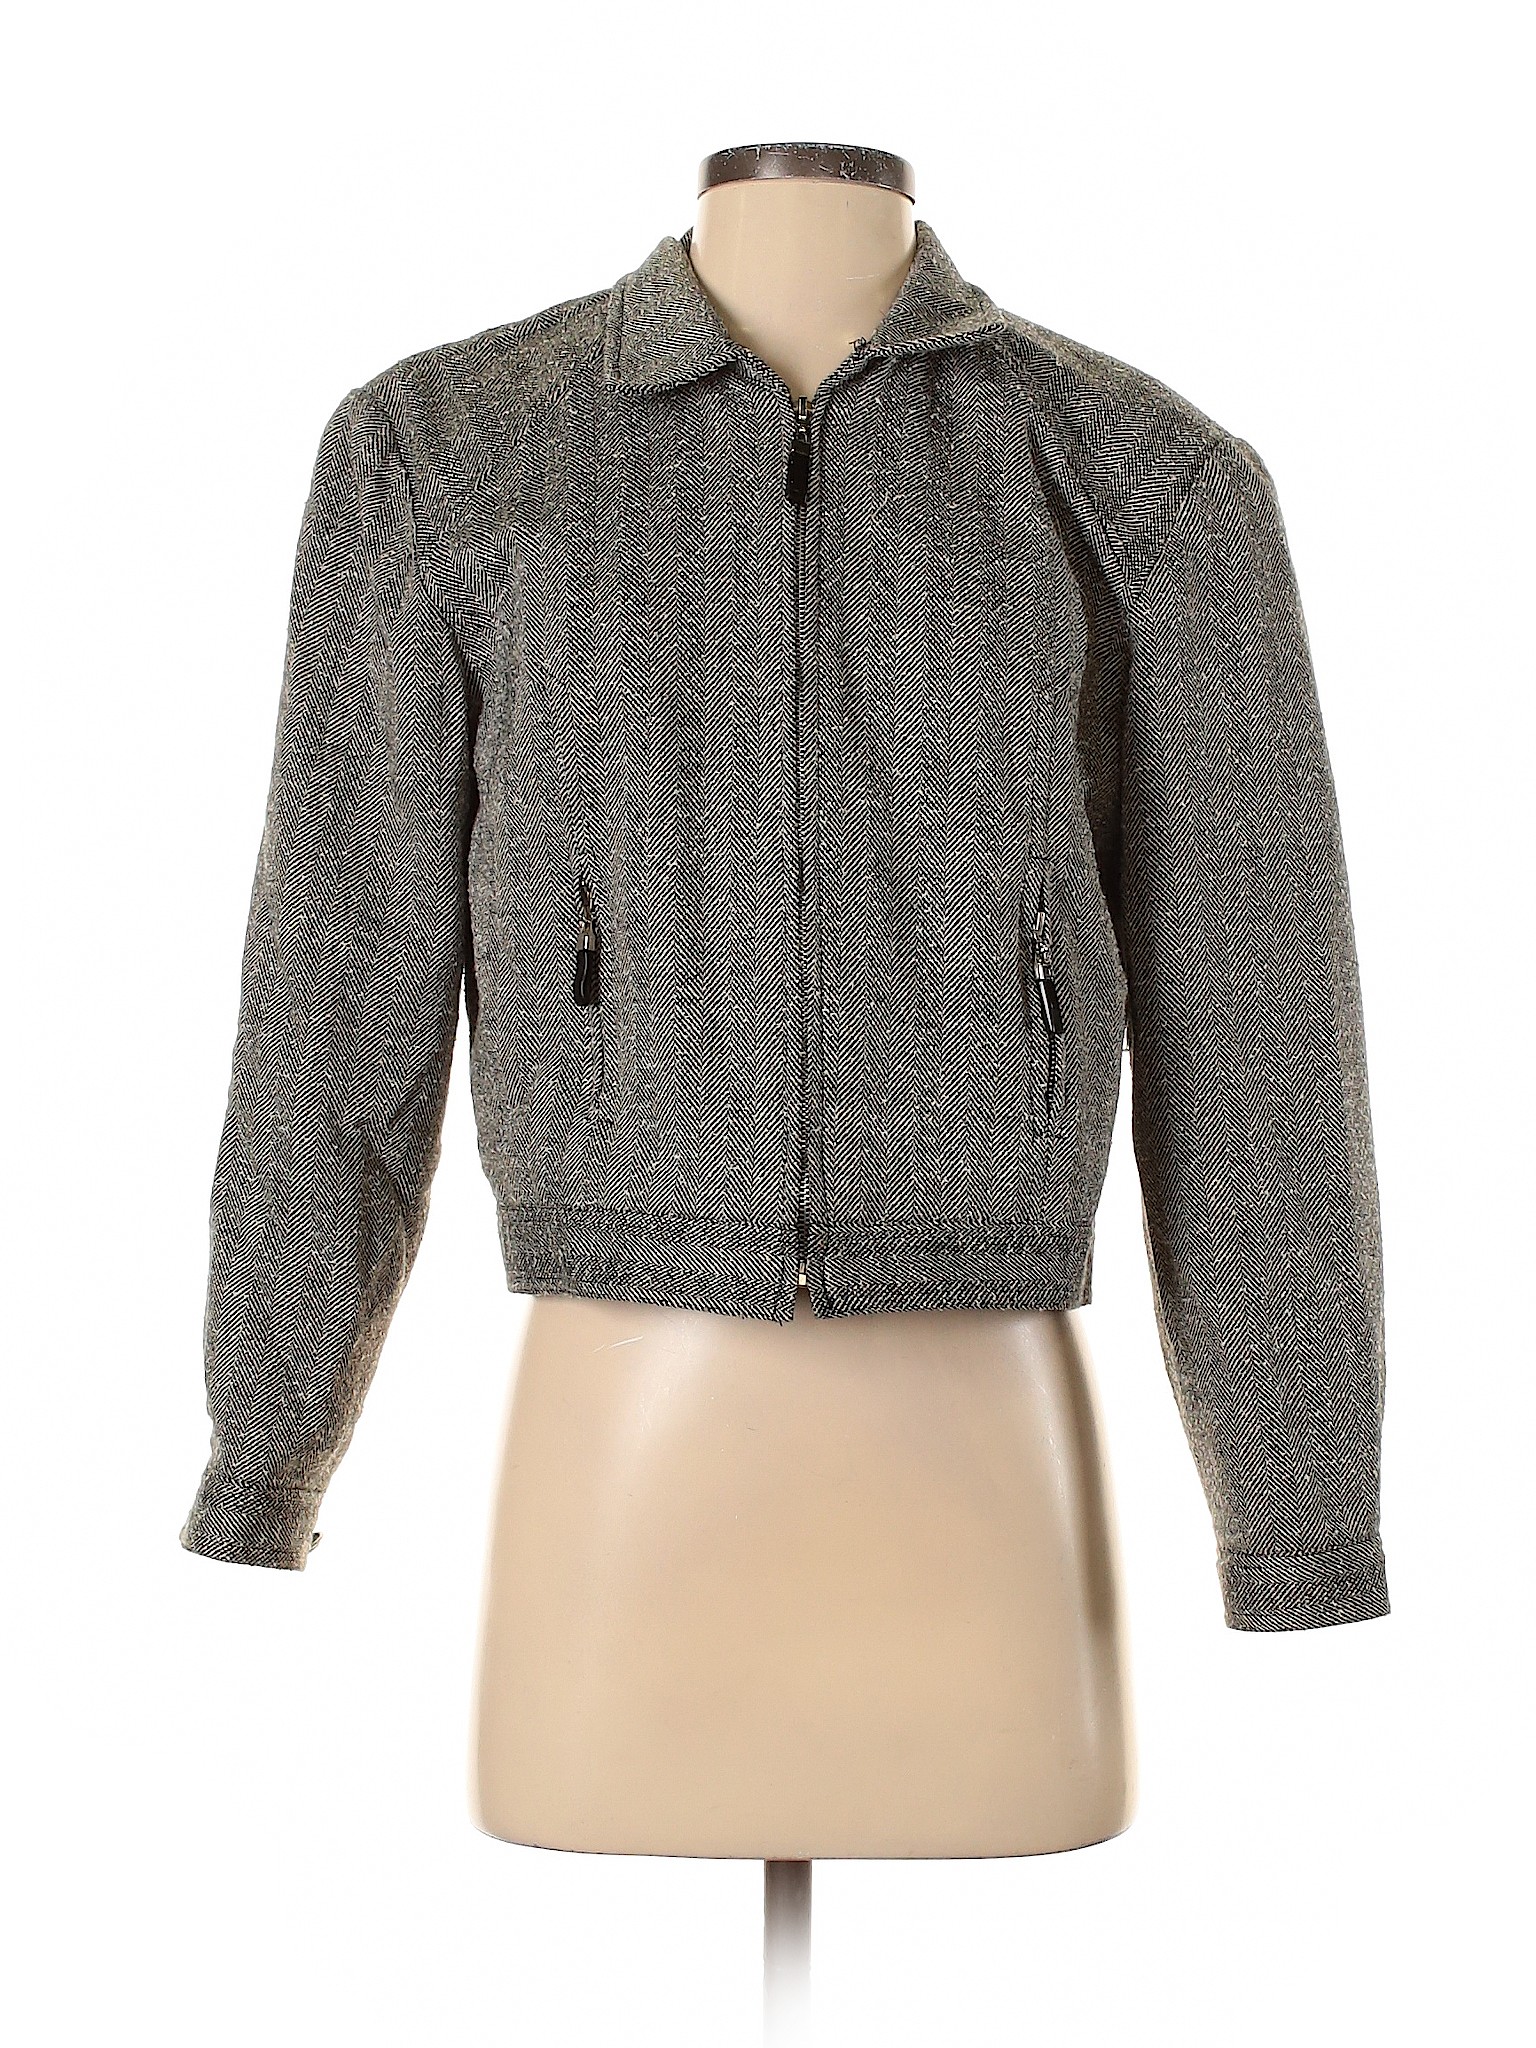 Howard Wolf Women Gray Jacket 4 | eBay